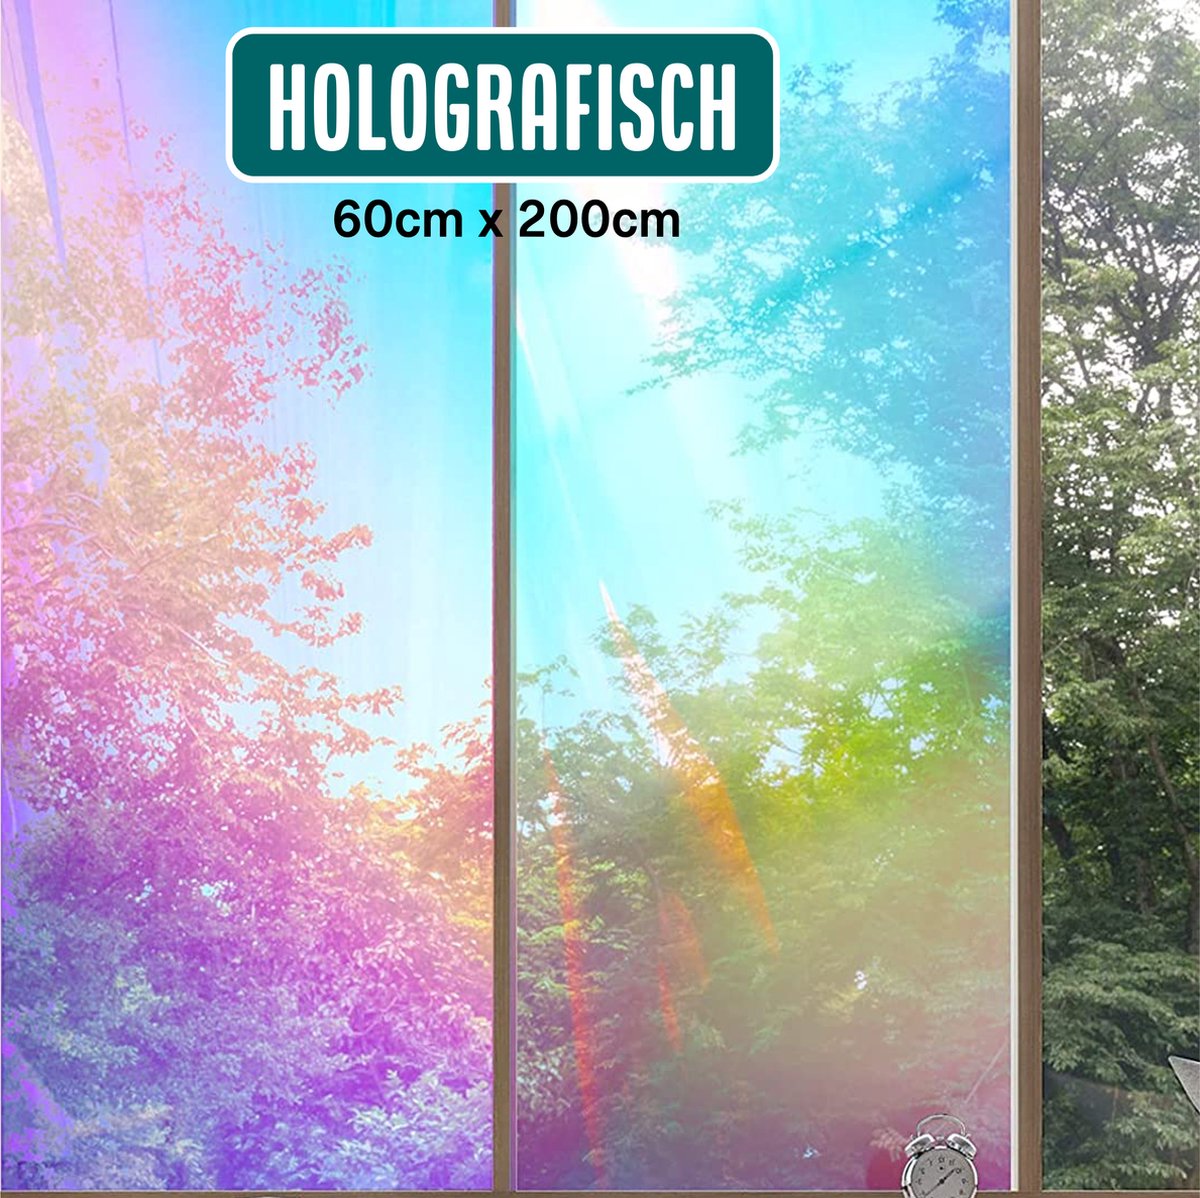 Homewell - Holografische raamfolie HR++ 60x200cm - Zonwerend & Isolerend - Statisch Zelfklevend - Zeepbel-effect